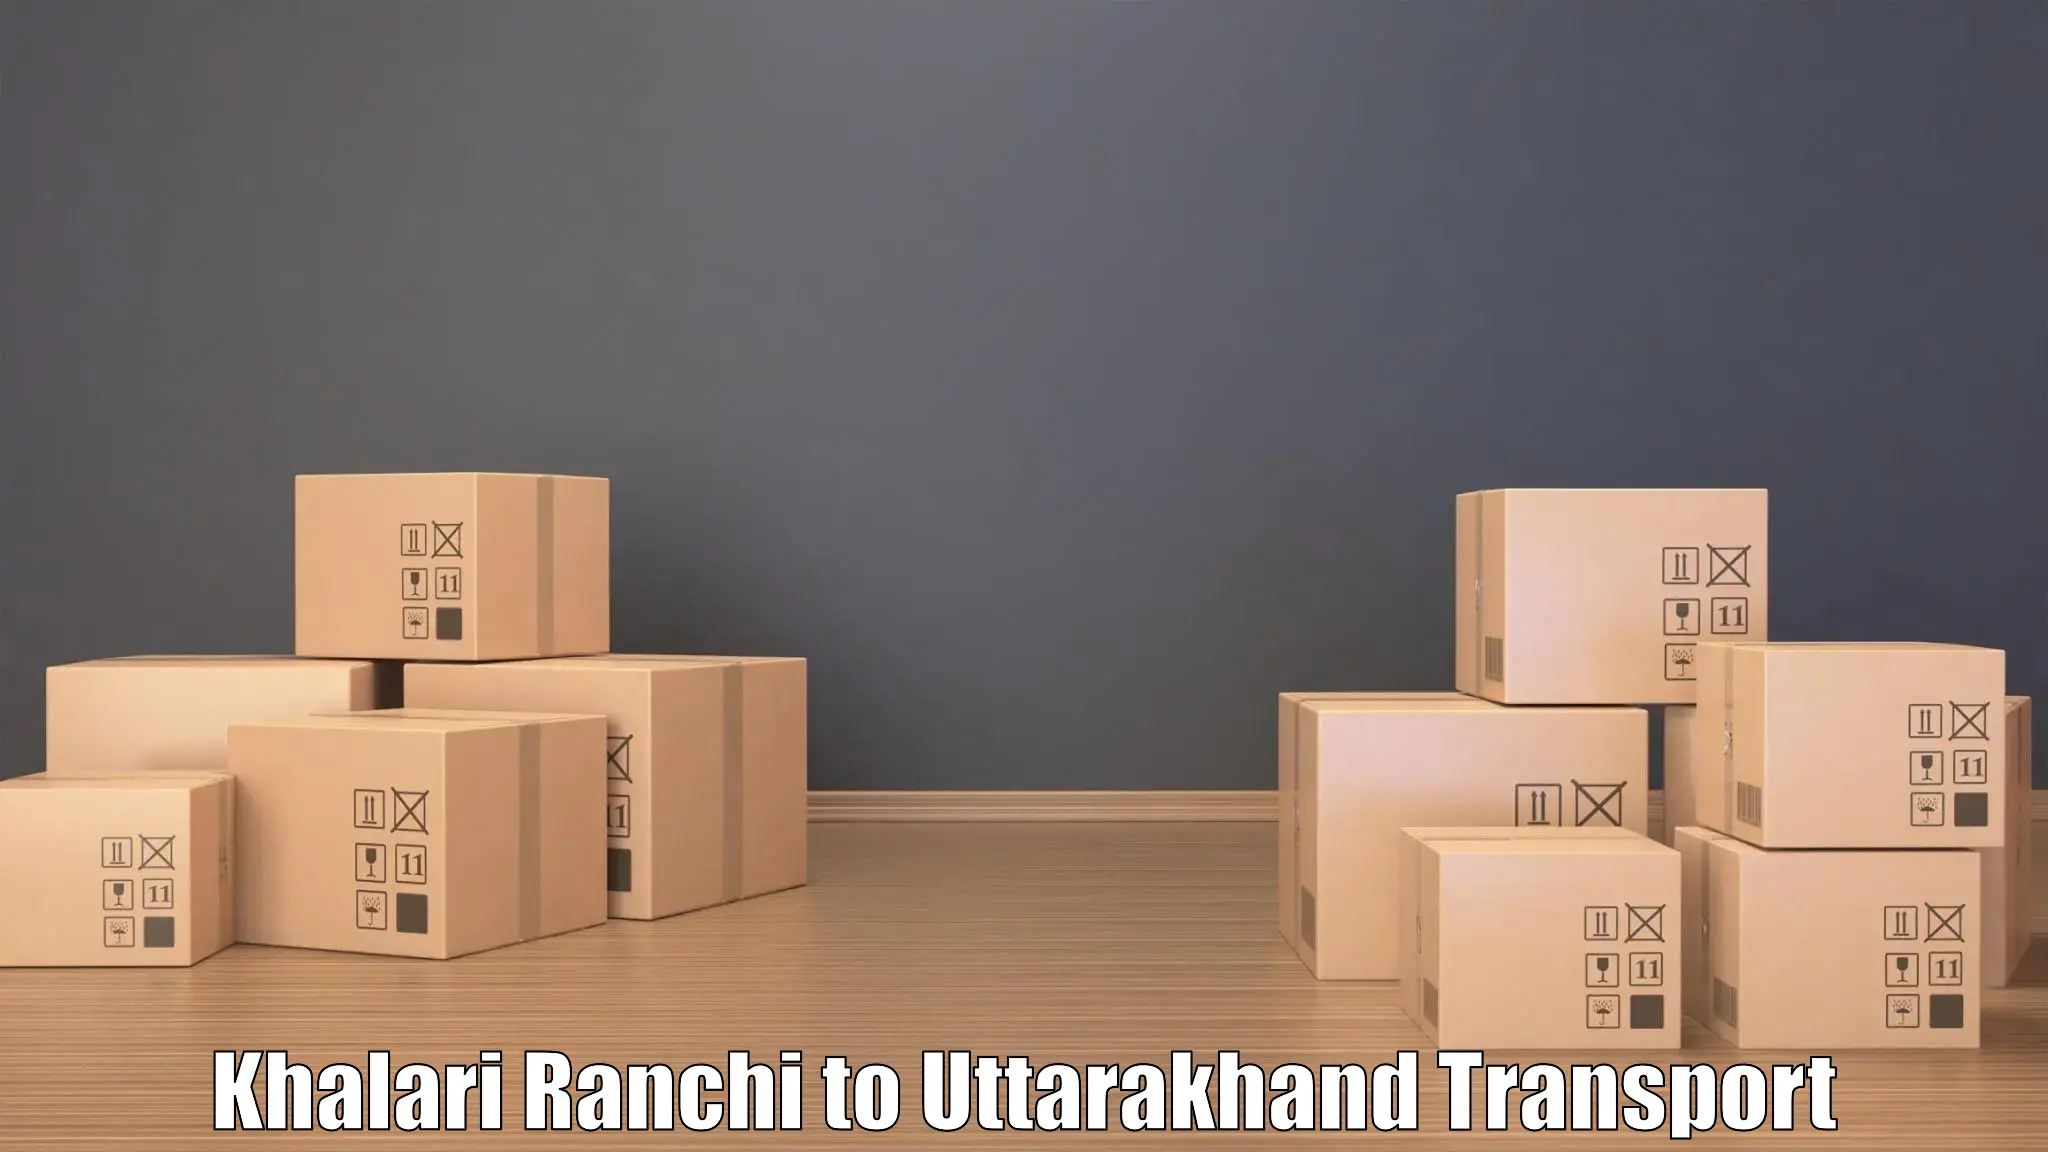 Transport in sharing Khalari Ranchi to Uttarkashi